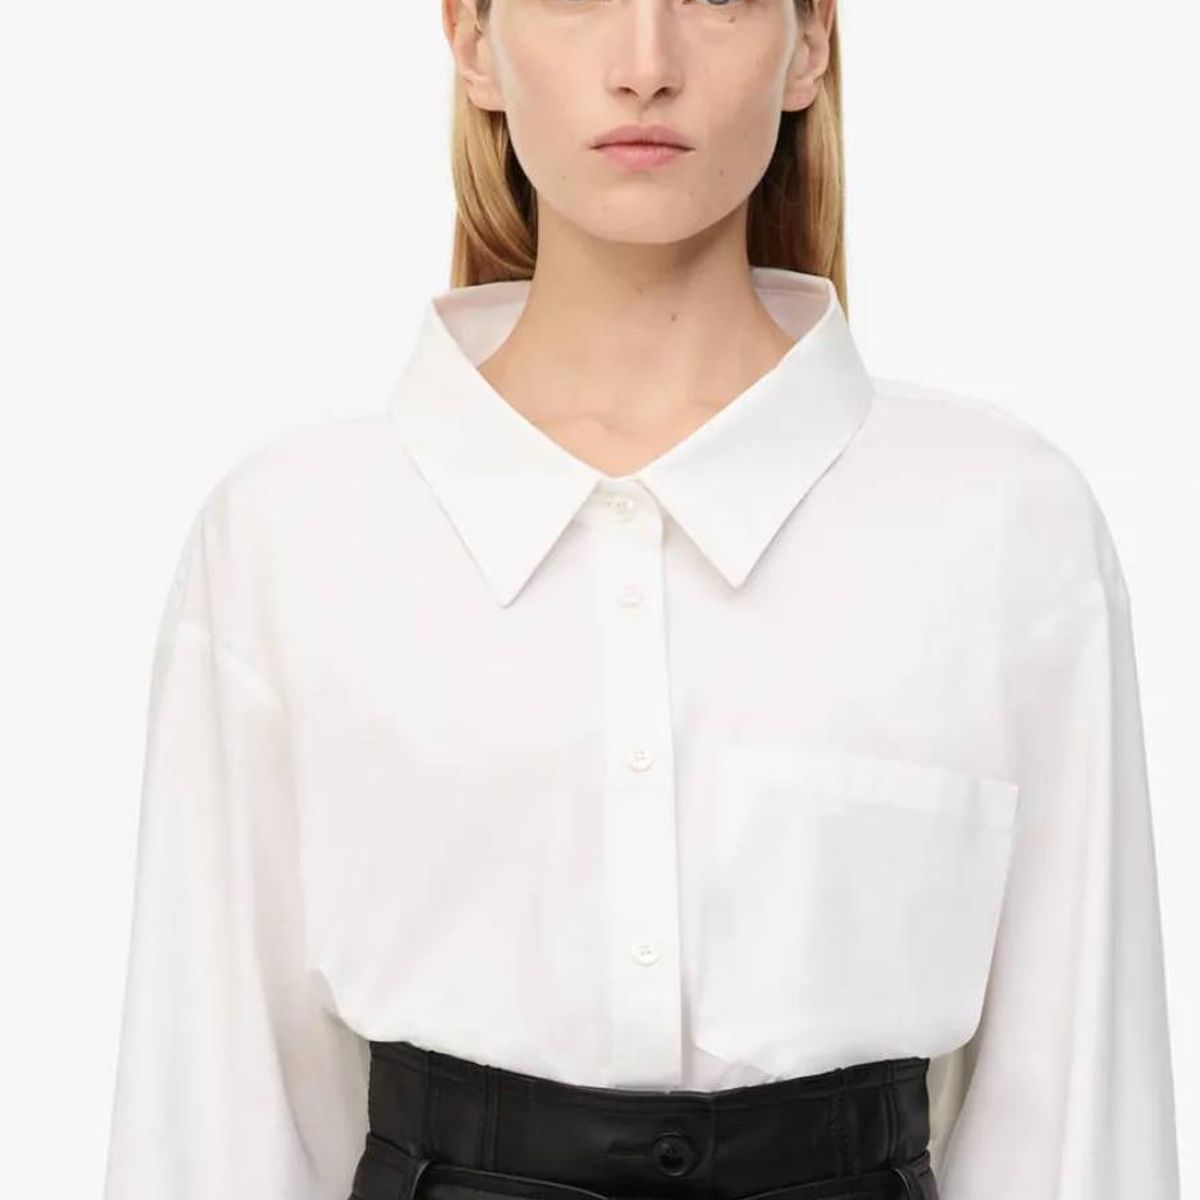 blanca y falda negra: Zara tiene más elegante